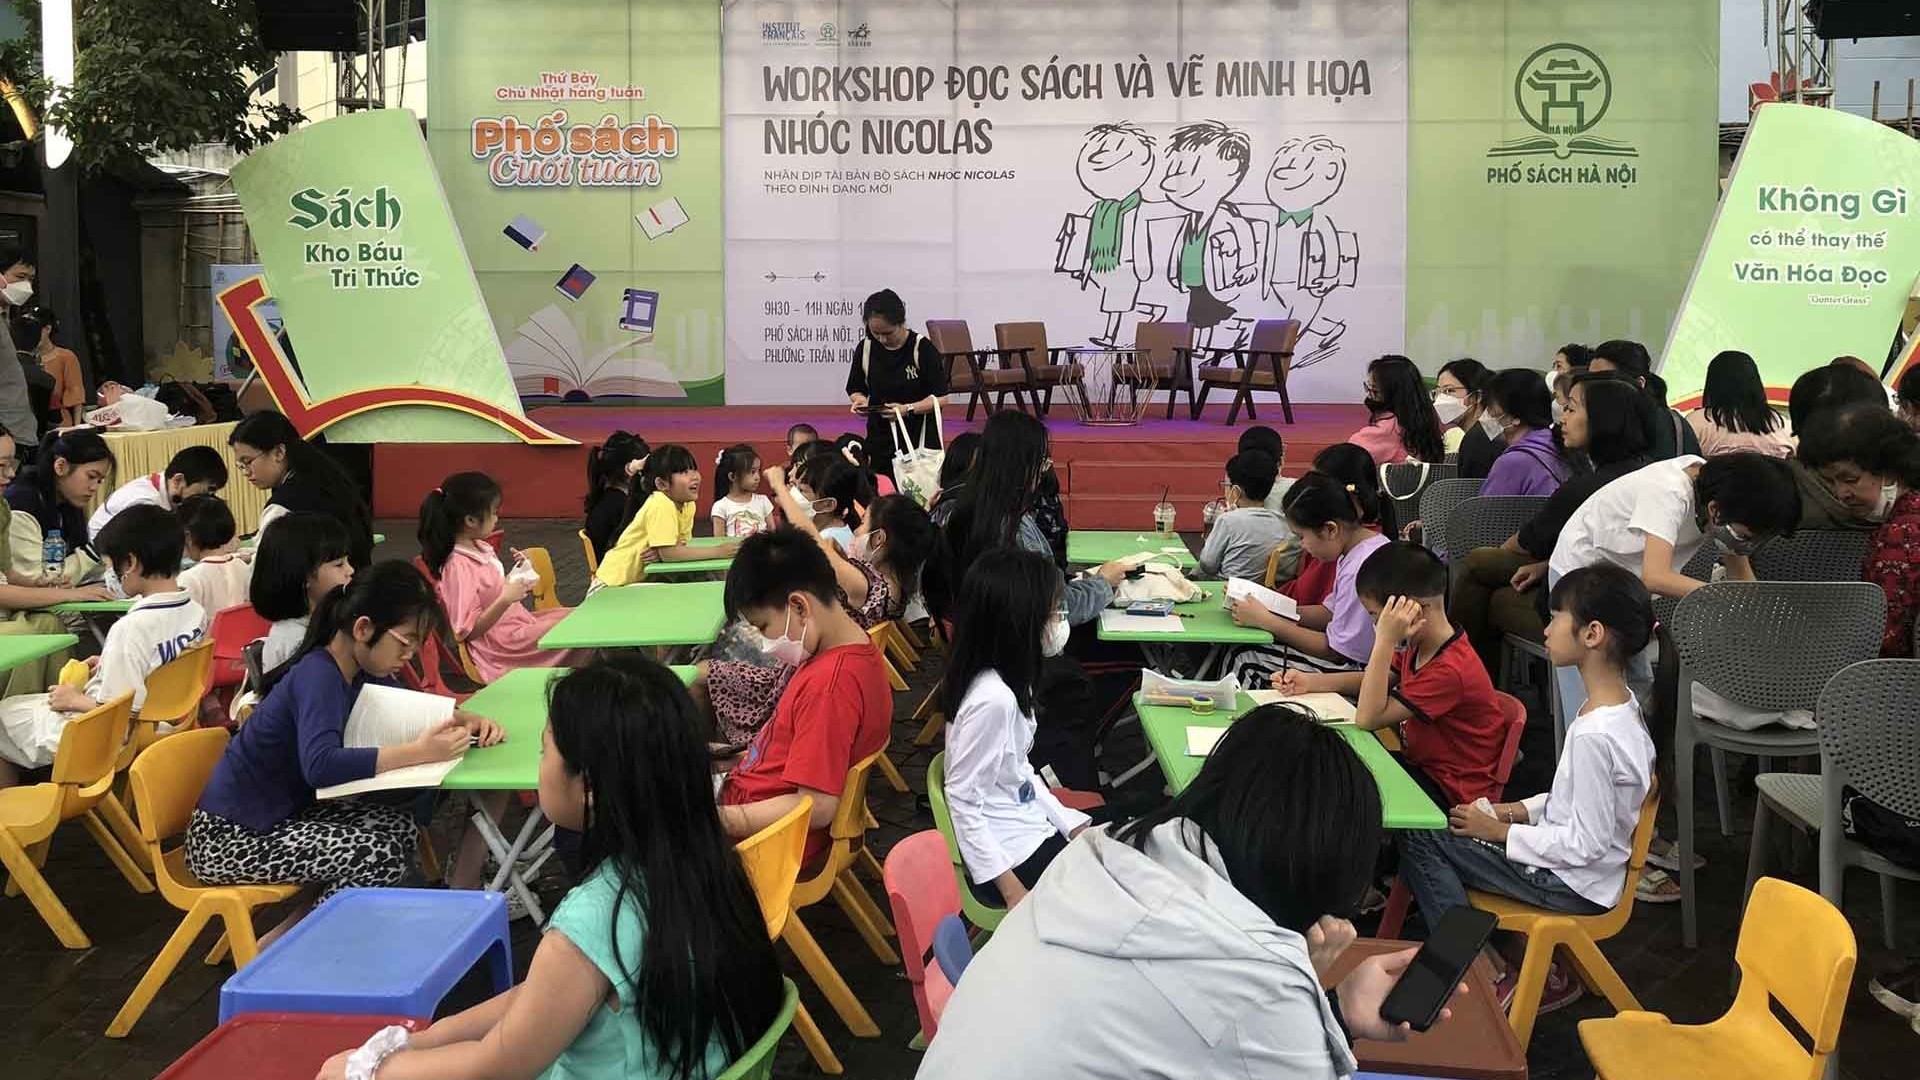 Ngày Sách và Văn hóa đọc Việt Nam 2023: Những người gieo mầm thói quen đọc sách